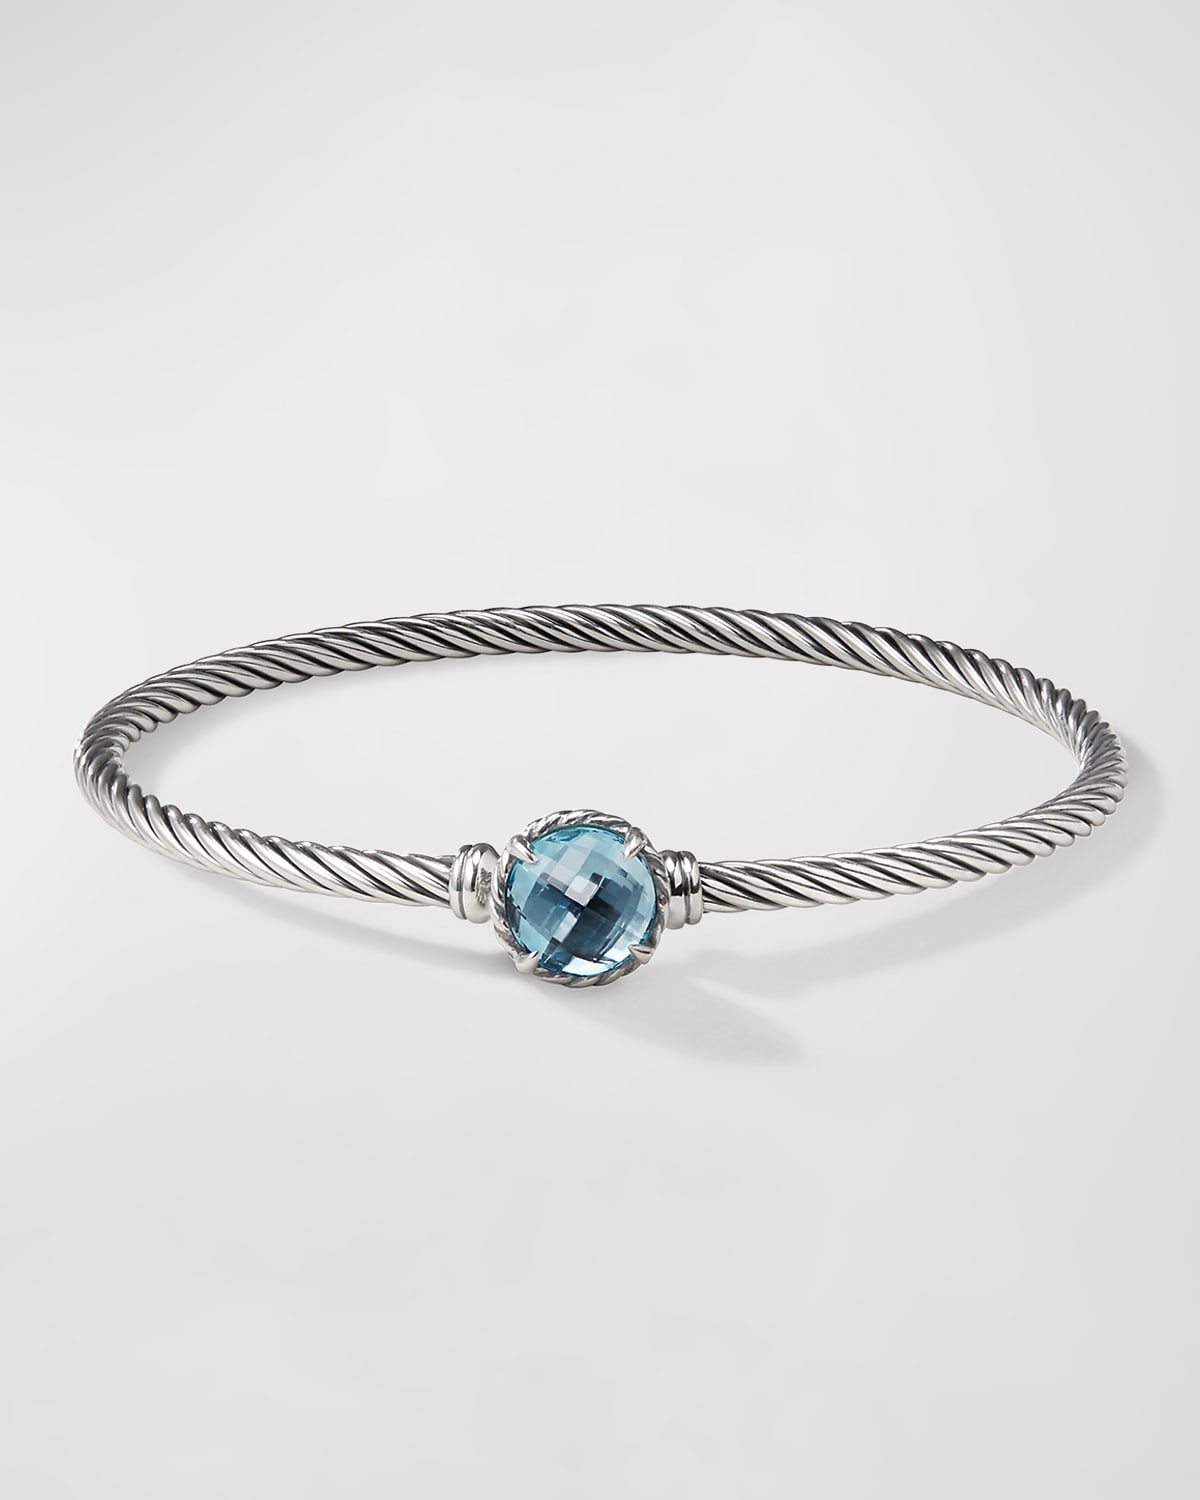 David Yurman Chatelaine Bracelet With Semiprecious Stone In Blue Topaz